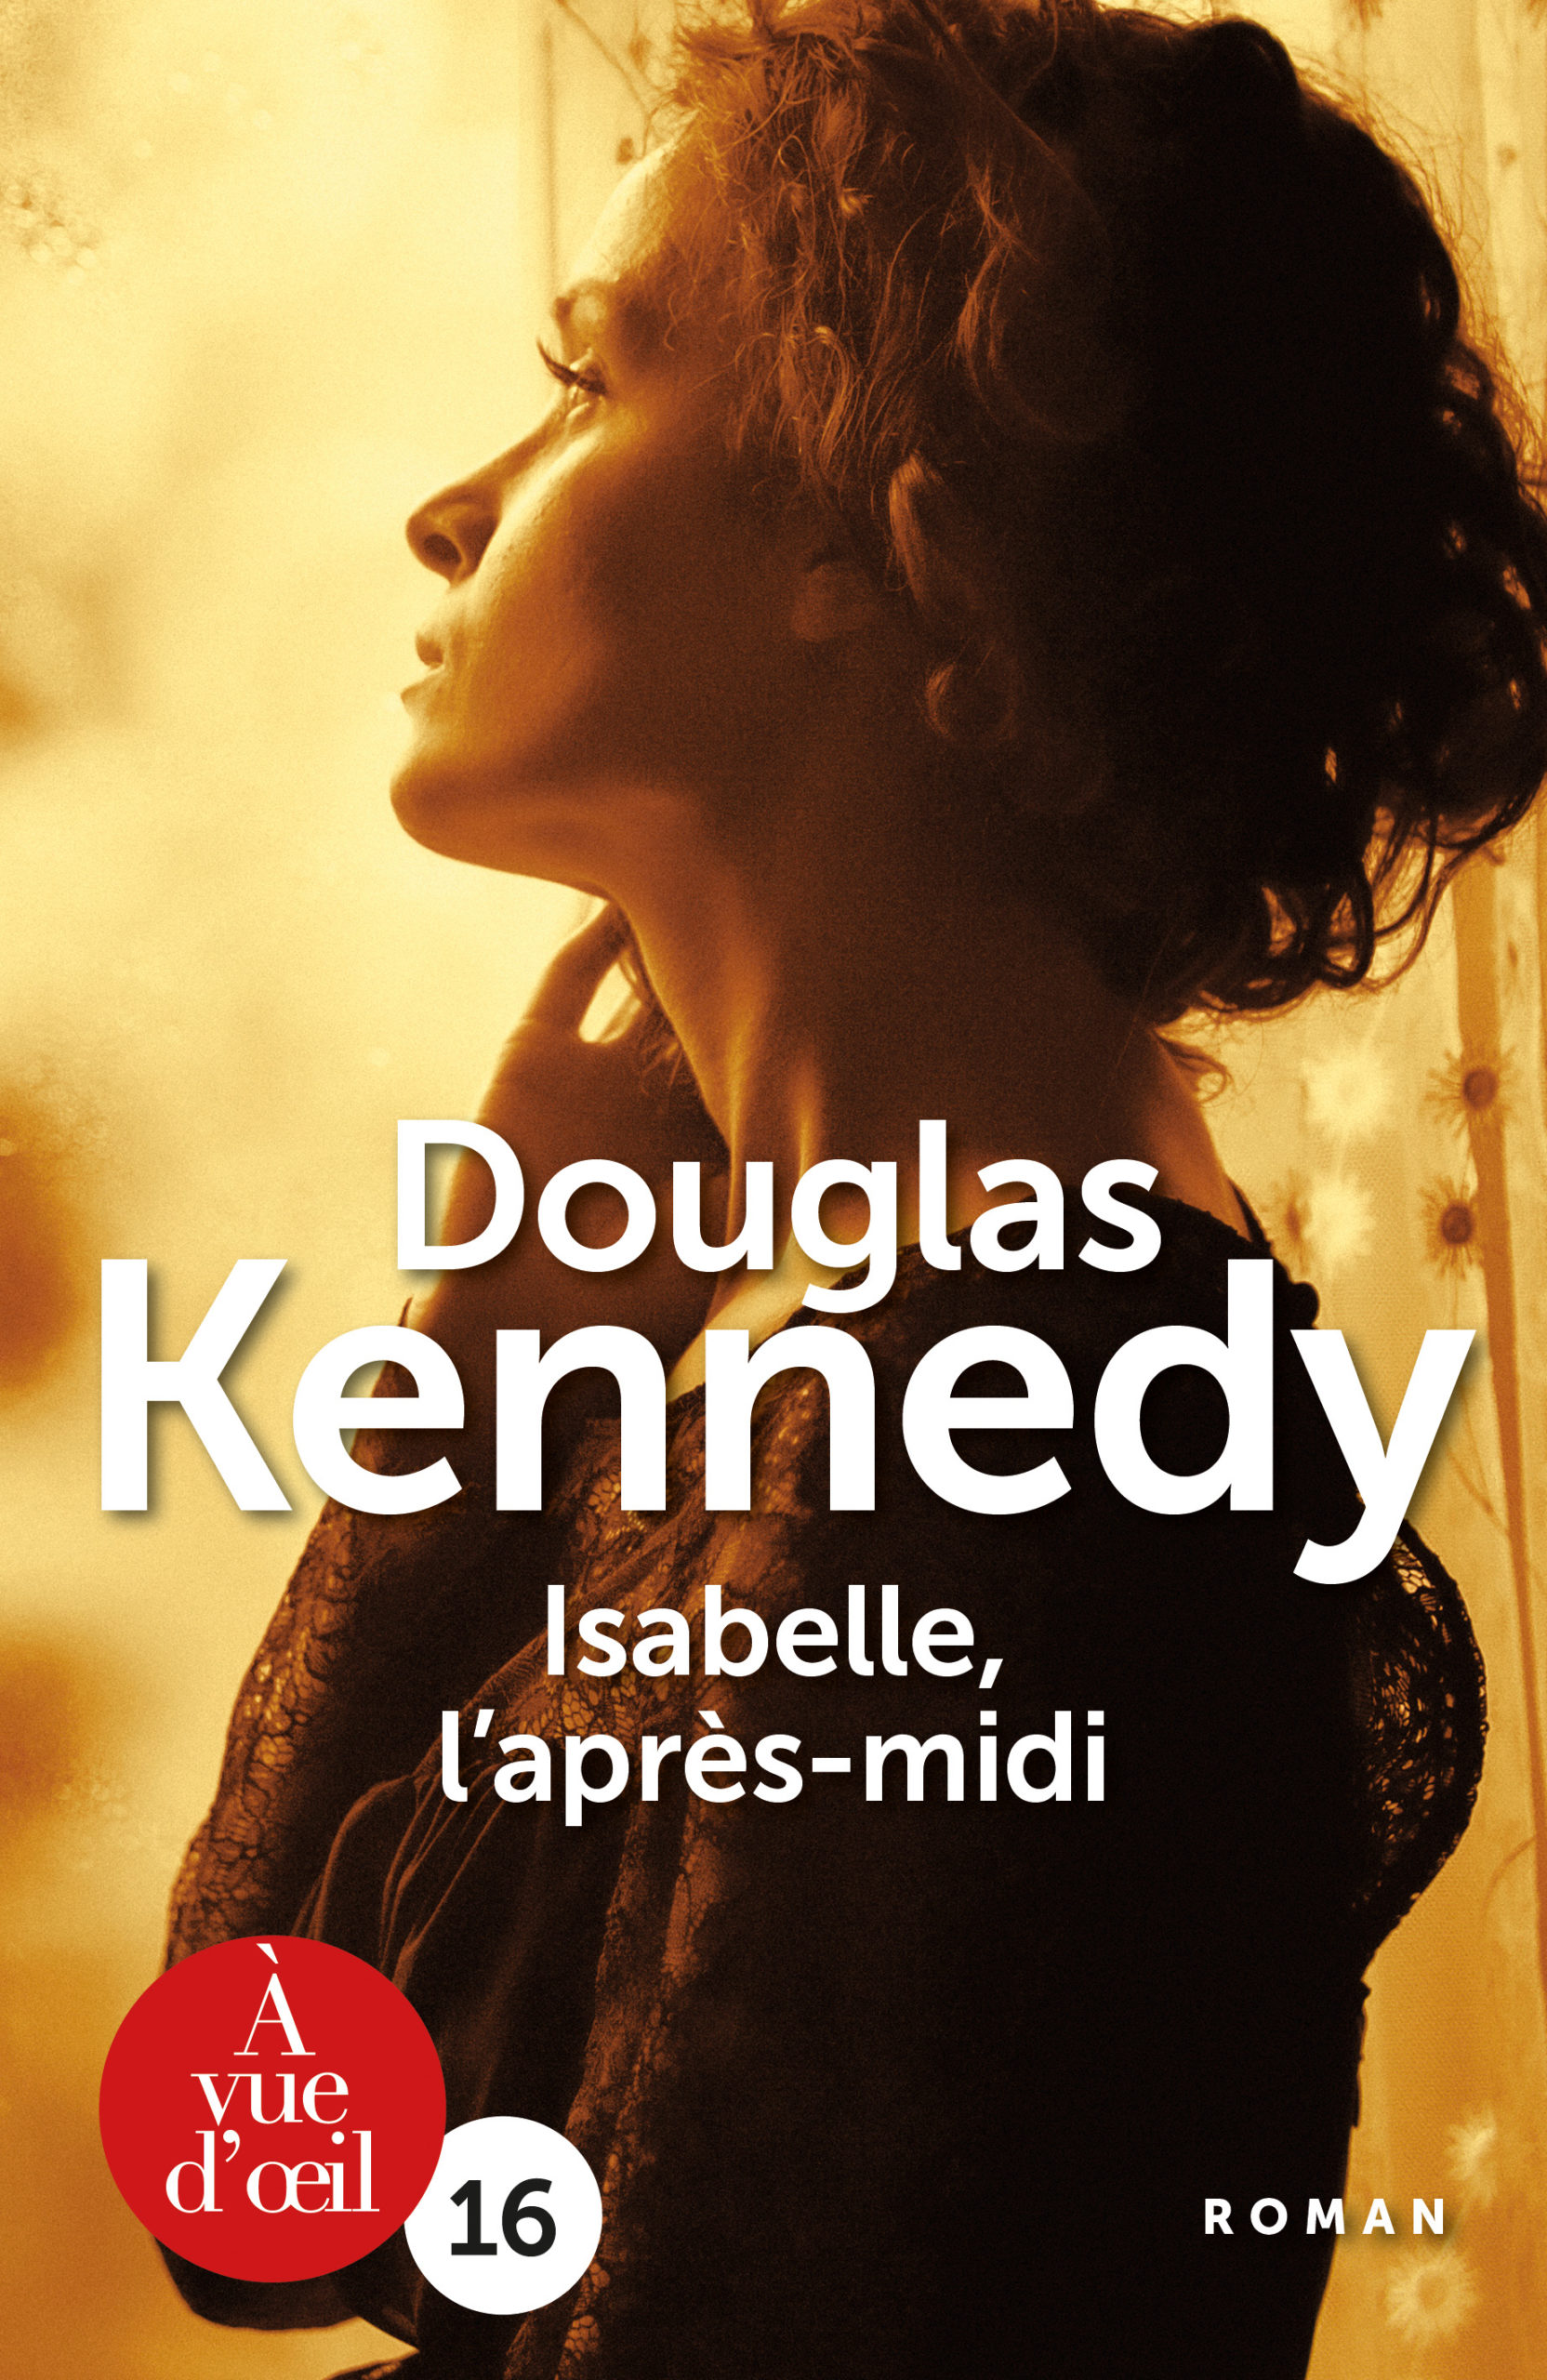 Couverture du livre en grands caractères Isabelle, l'après-midi de Douglas Kennedy